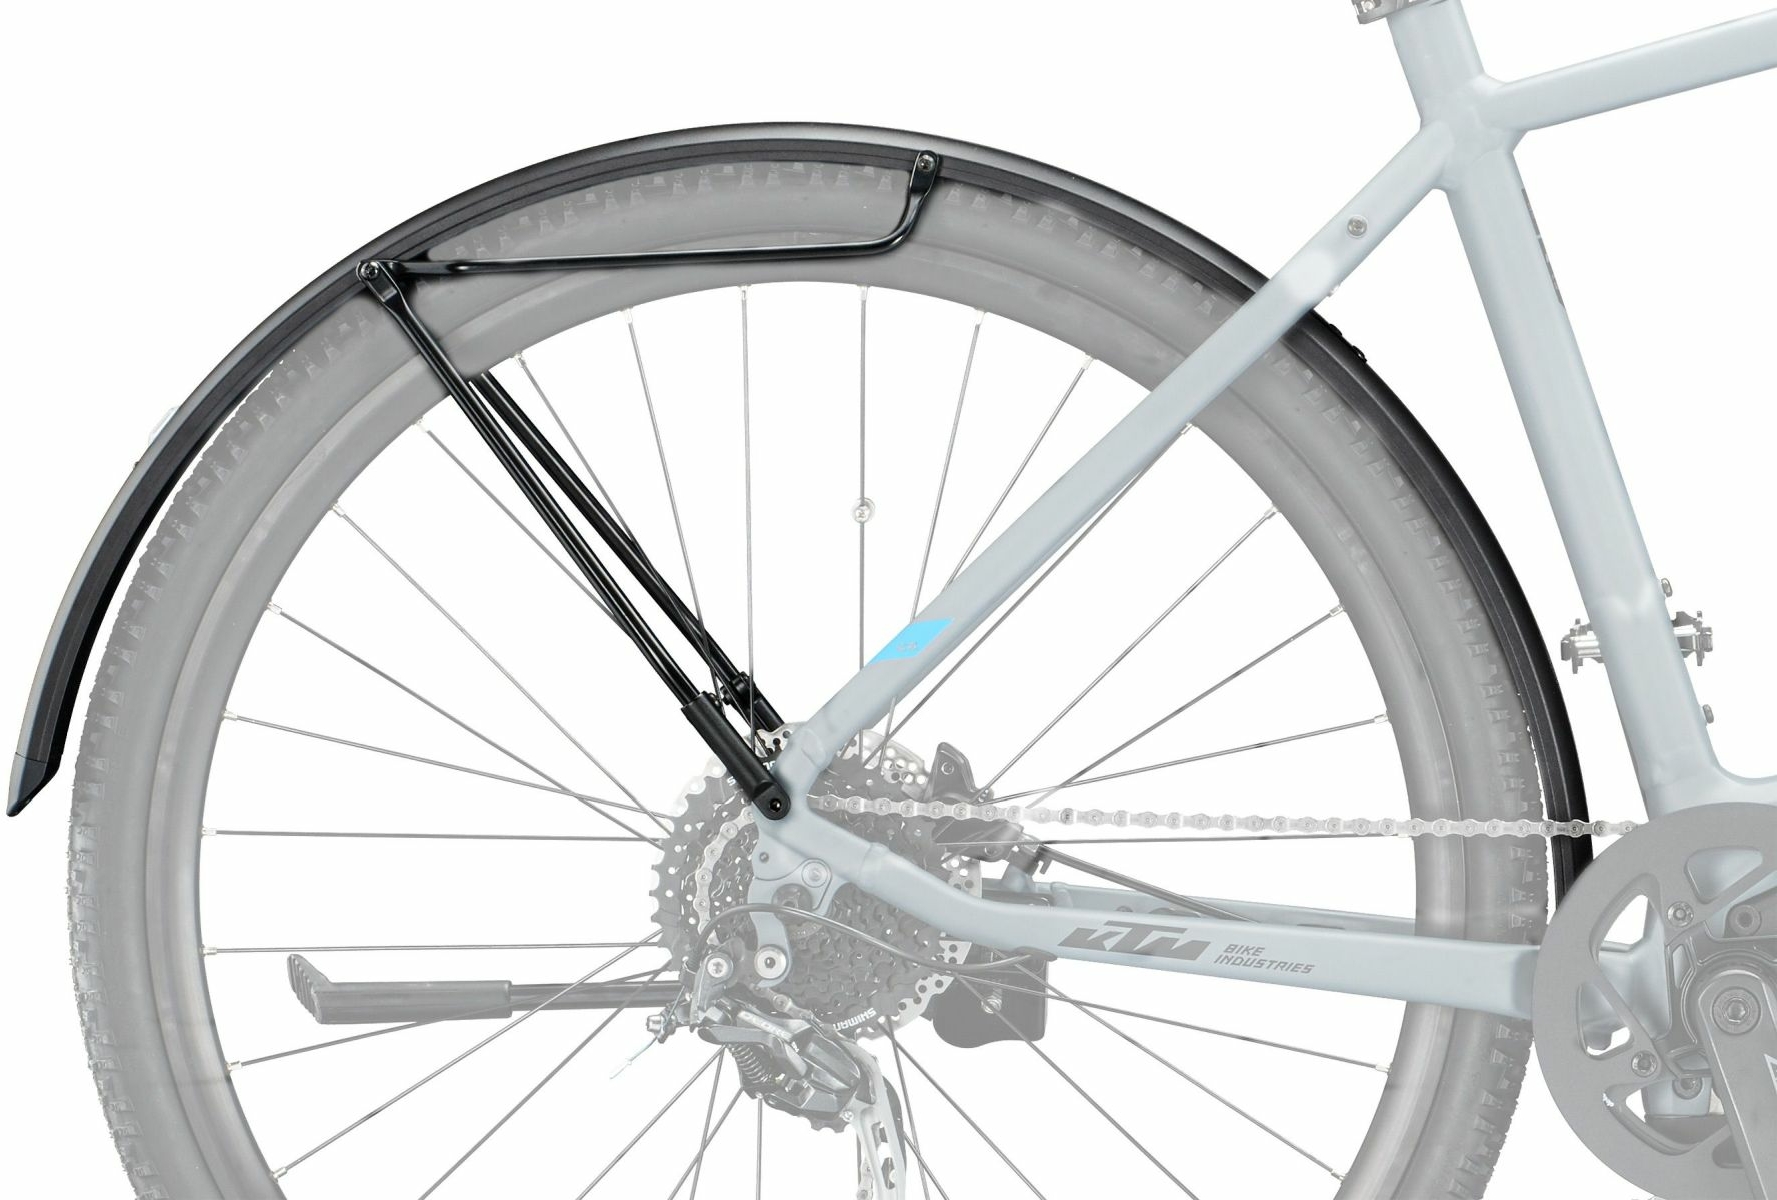 KTM Schutzbleche Macina Action 27 Zoll Modell 2020 E-Bike Schutzbleche hinten mit Rail und integriertem Licht